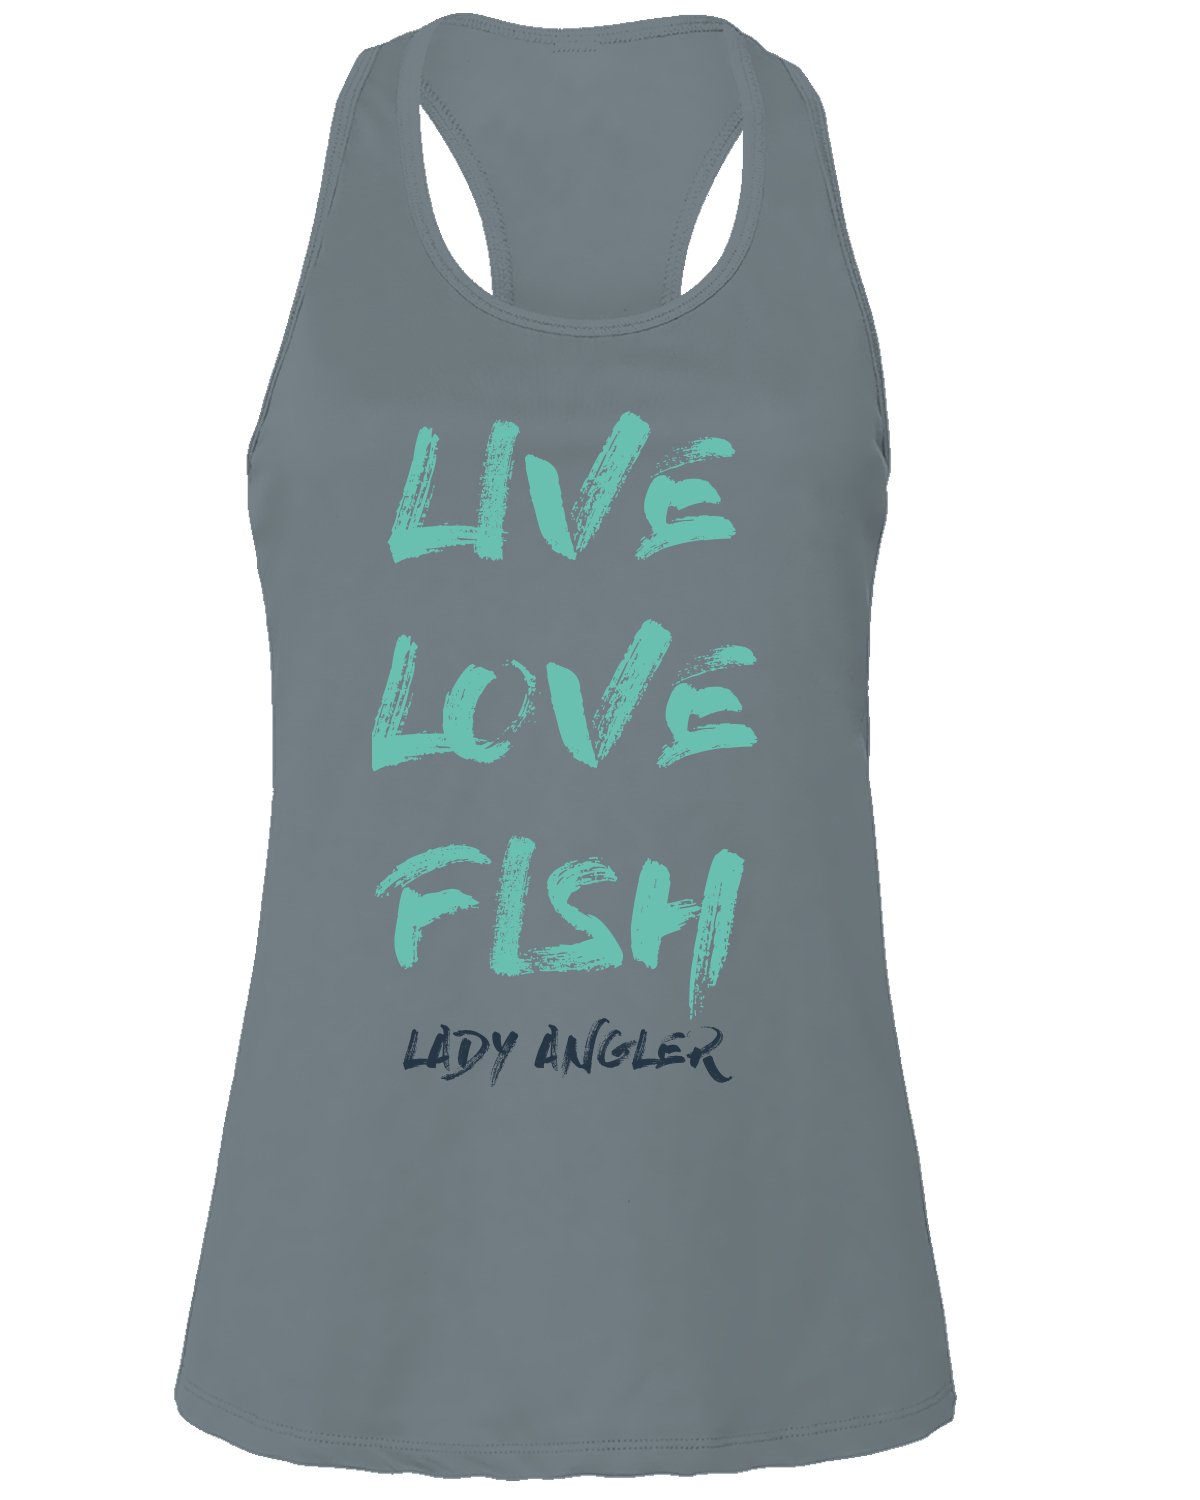 Live Love Fish Tank Top - Black Cat MFG - Tank Top